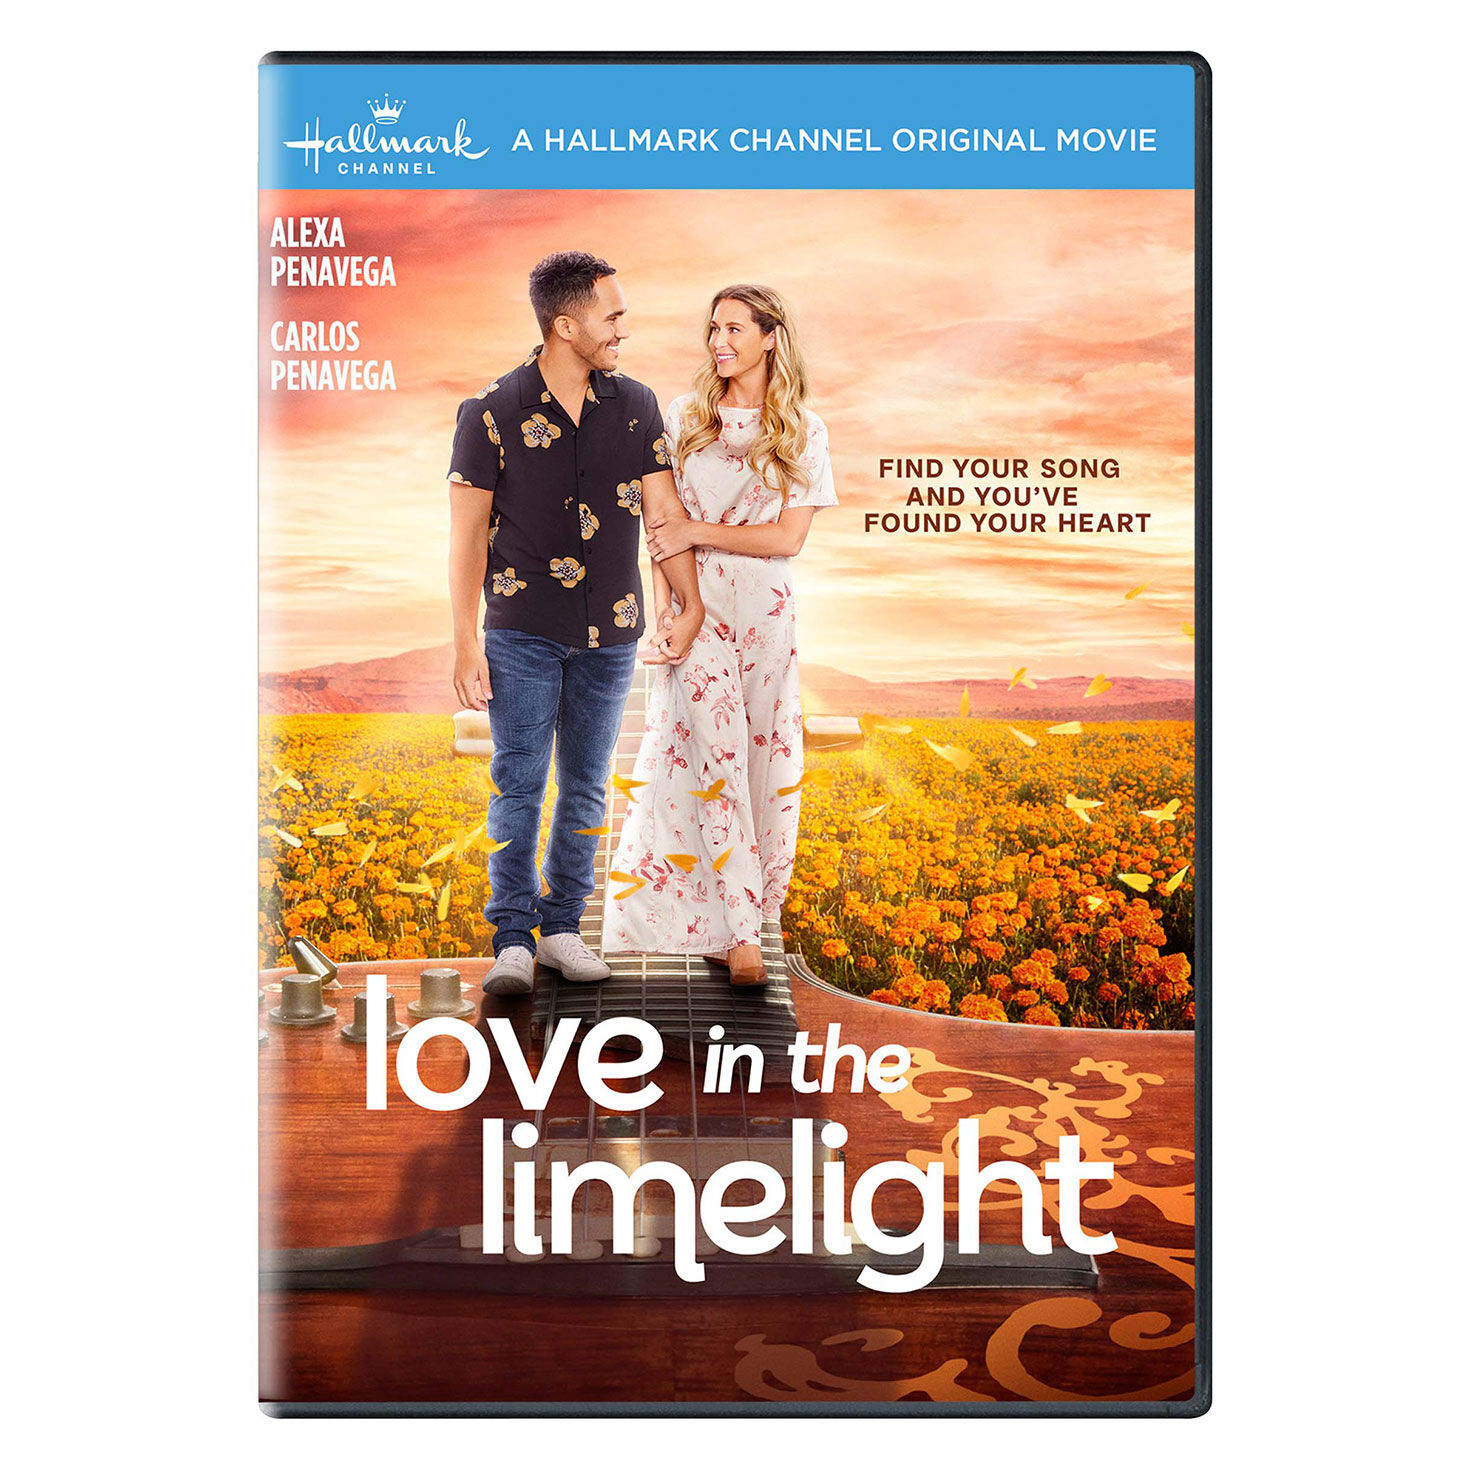 Love in the Limelight Hallmark Channel DVD - Hallmark Channel